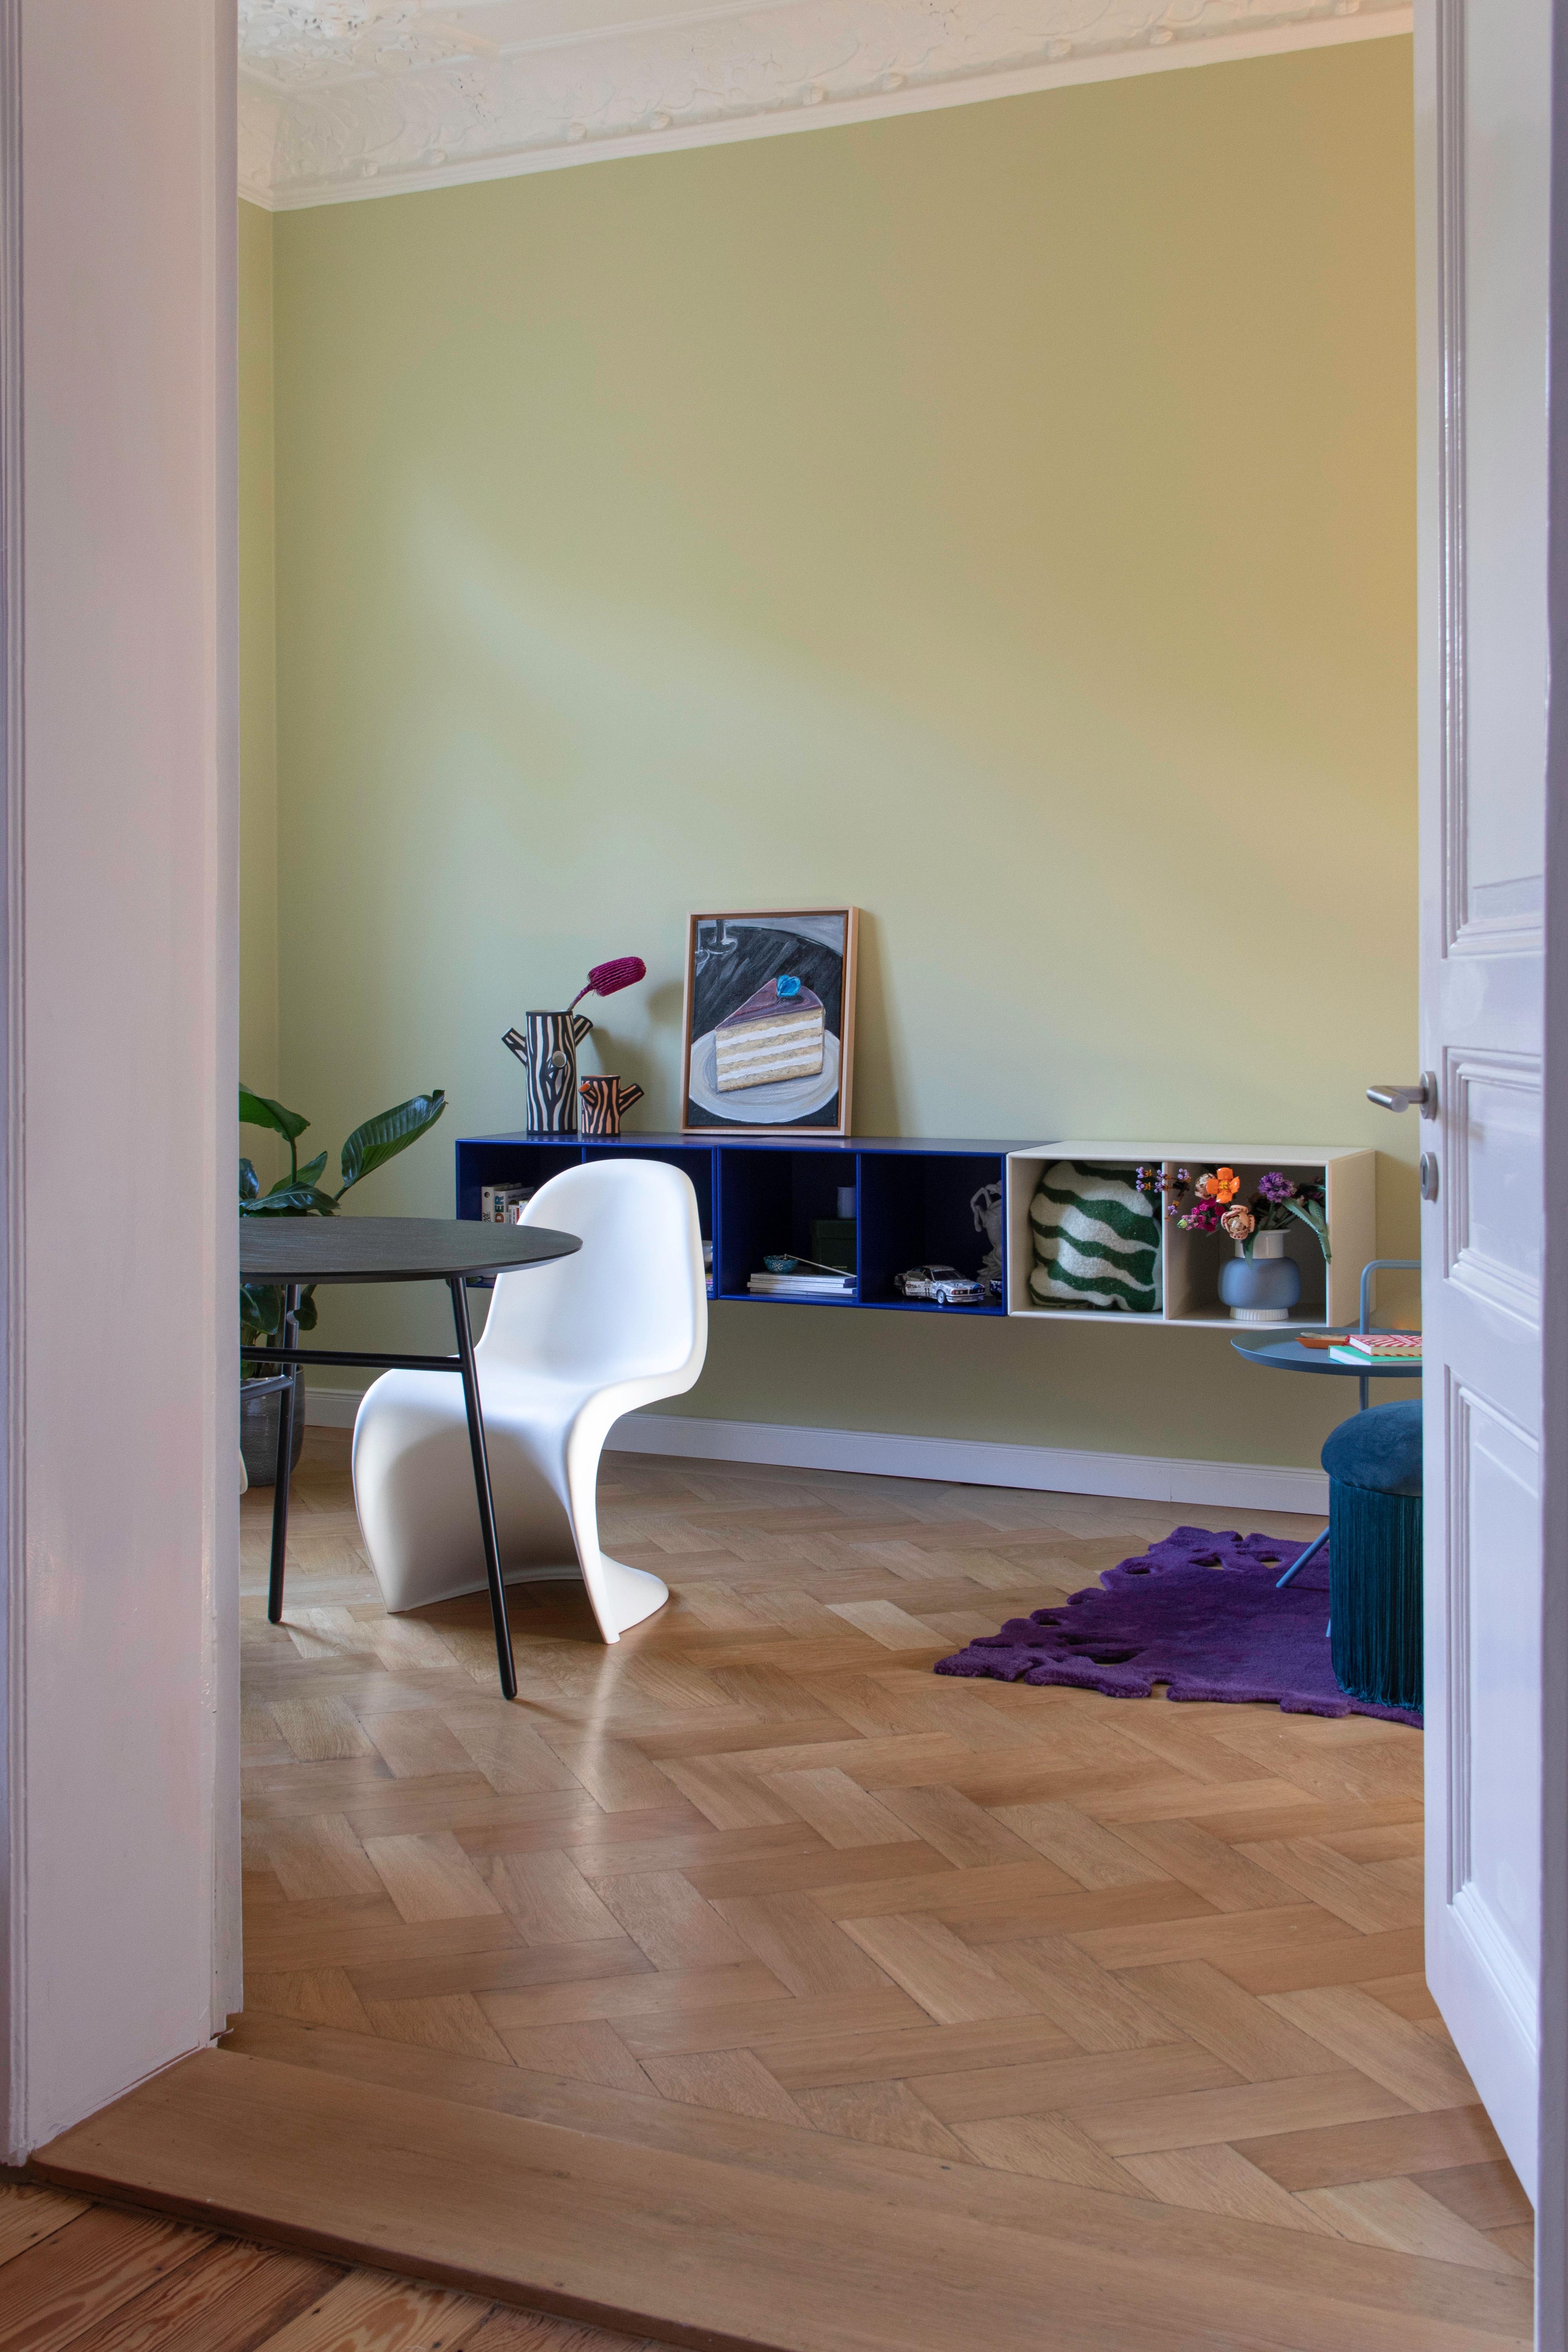 #Esszimmer #Farbe #Wandfarbe #Farbenfroh #Grün #Altbau #Parkett #Sideboard #Couchliebt #Couchstyle #Blau 